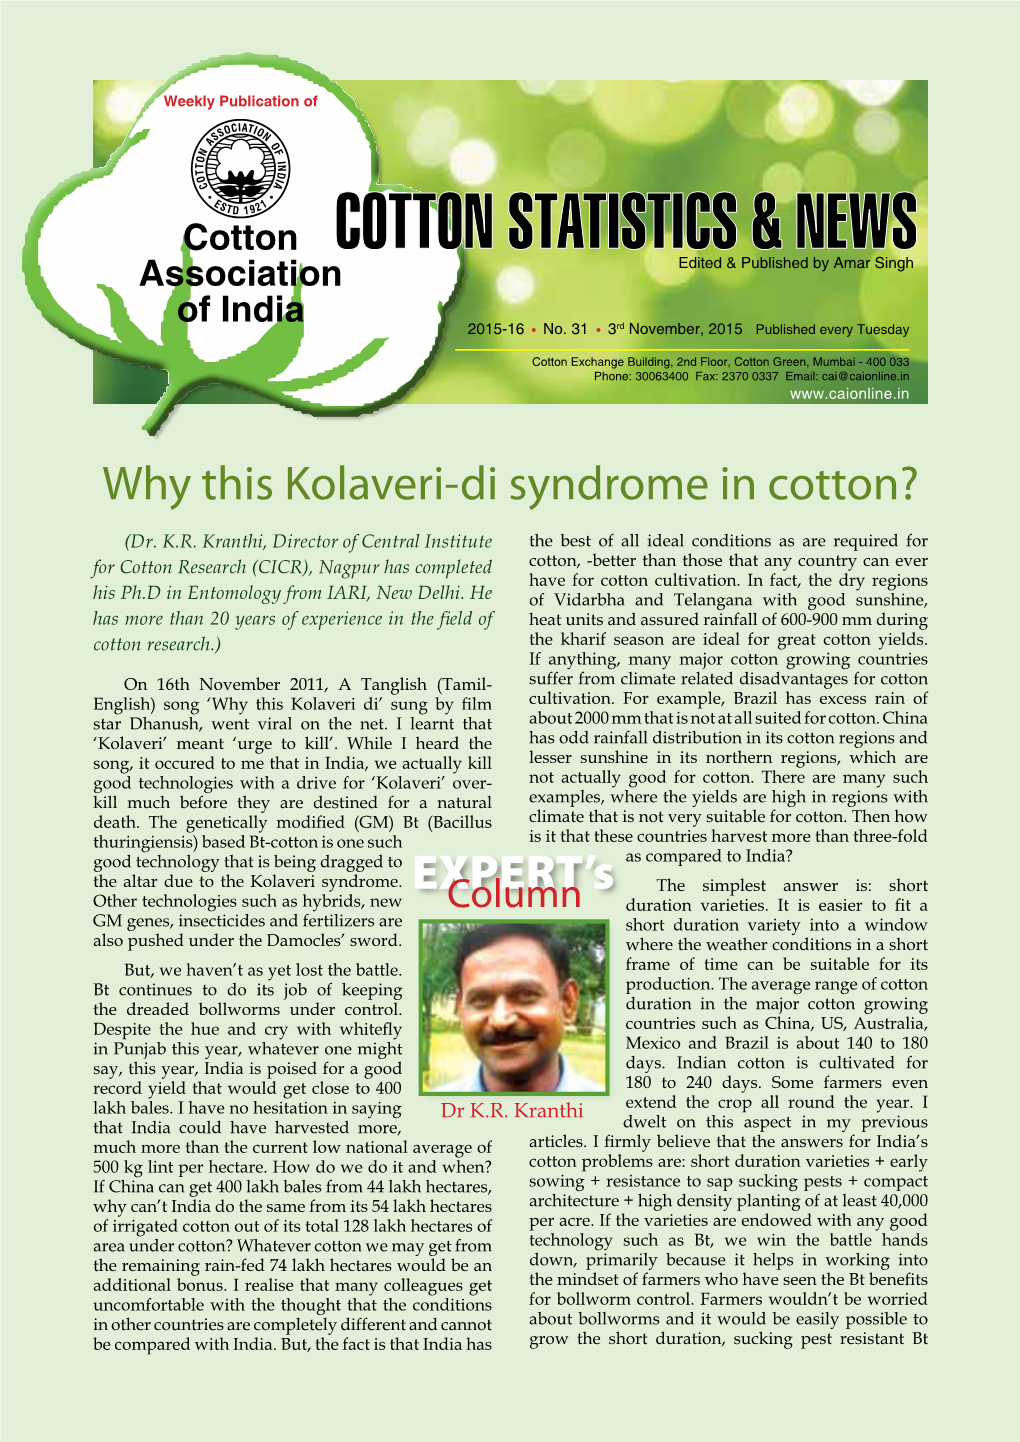 Why This Kolaveri-Di Syndrome in Cotton?